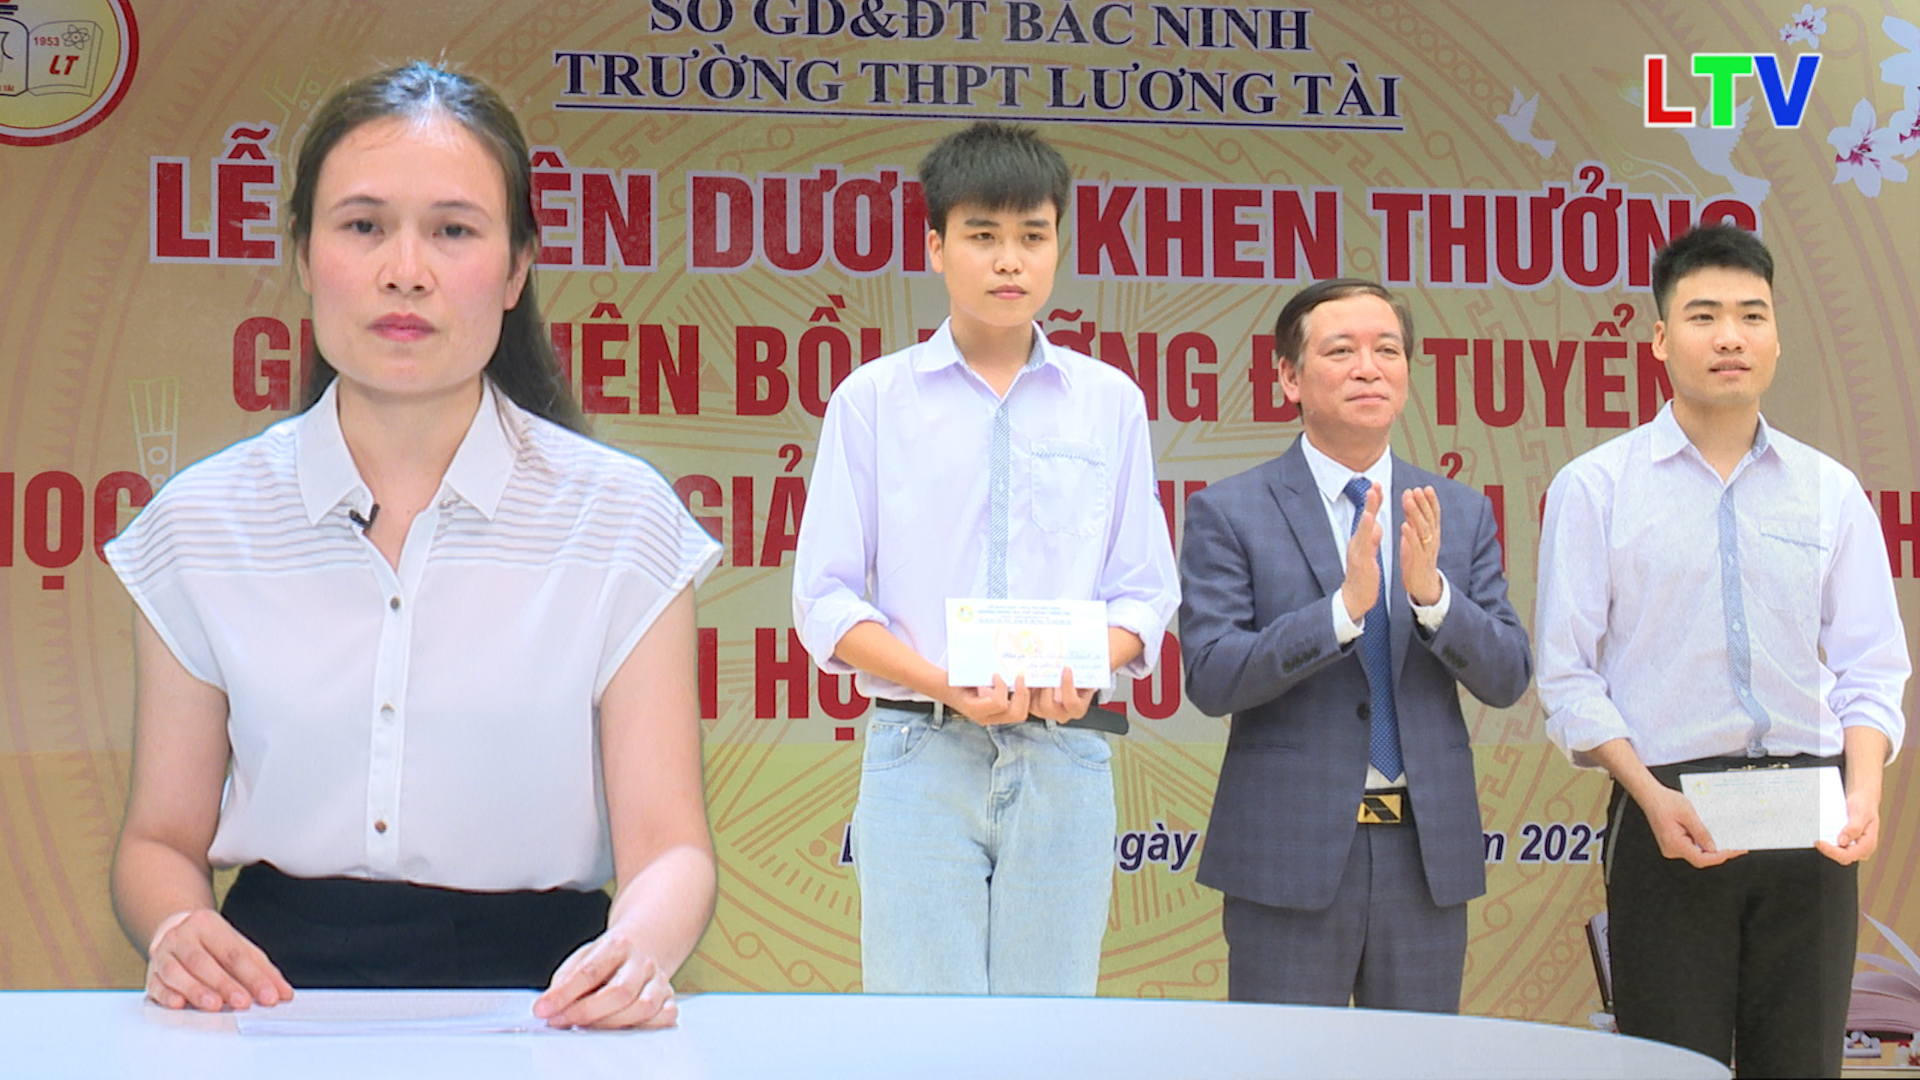 Trường THPT Lương Tài tuyên dương khen thưởng giáo viên và học sinh